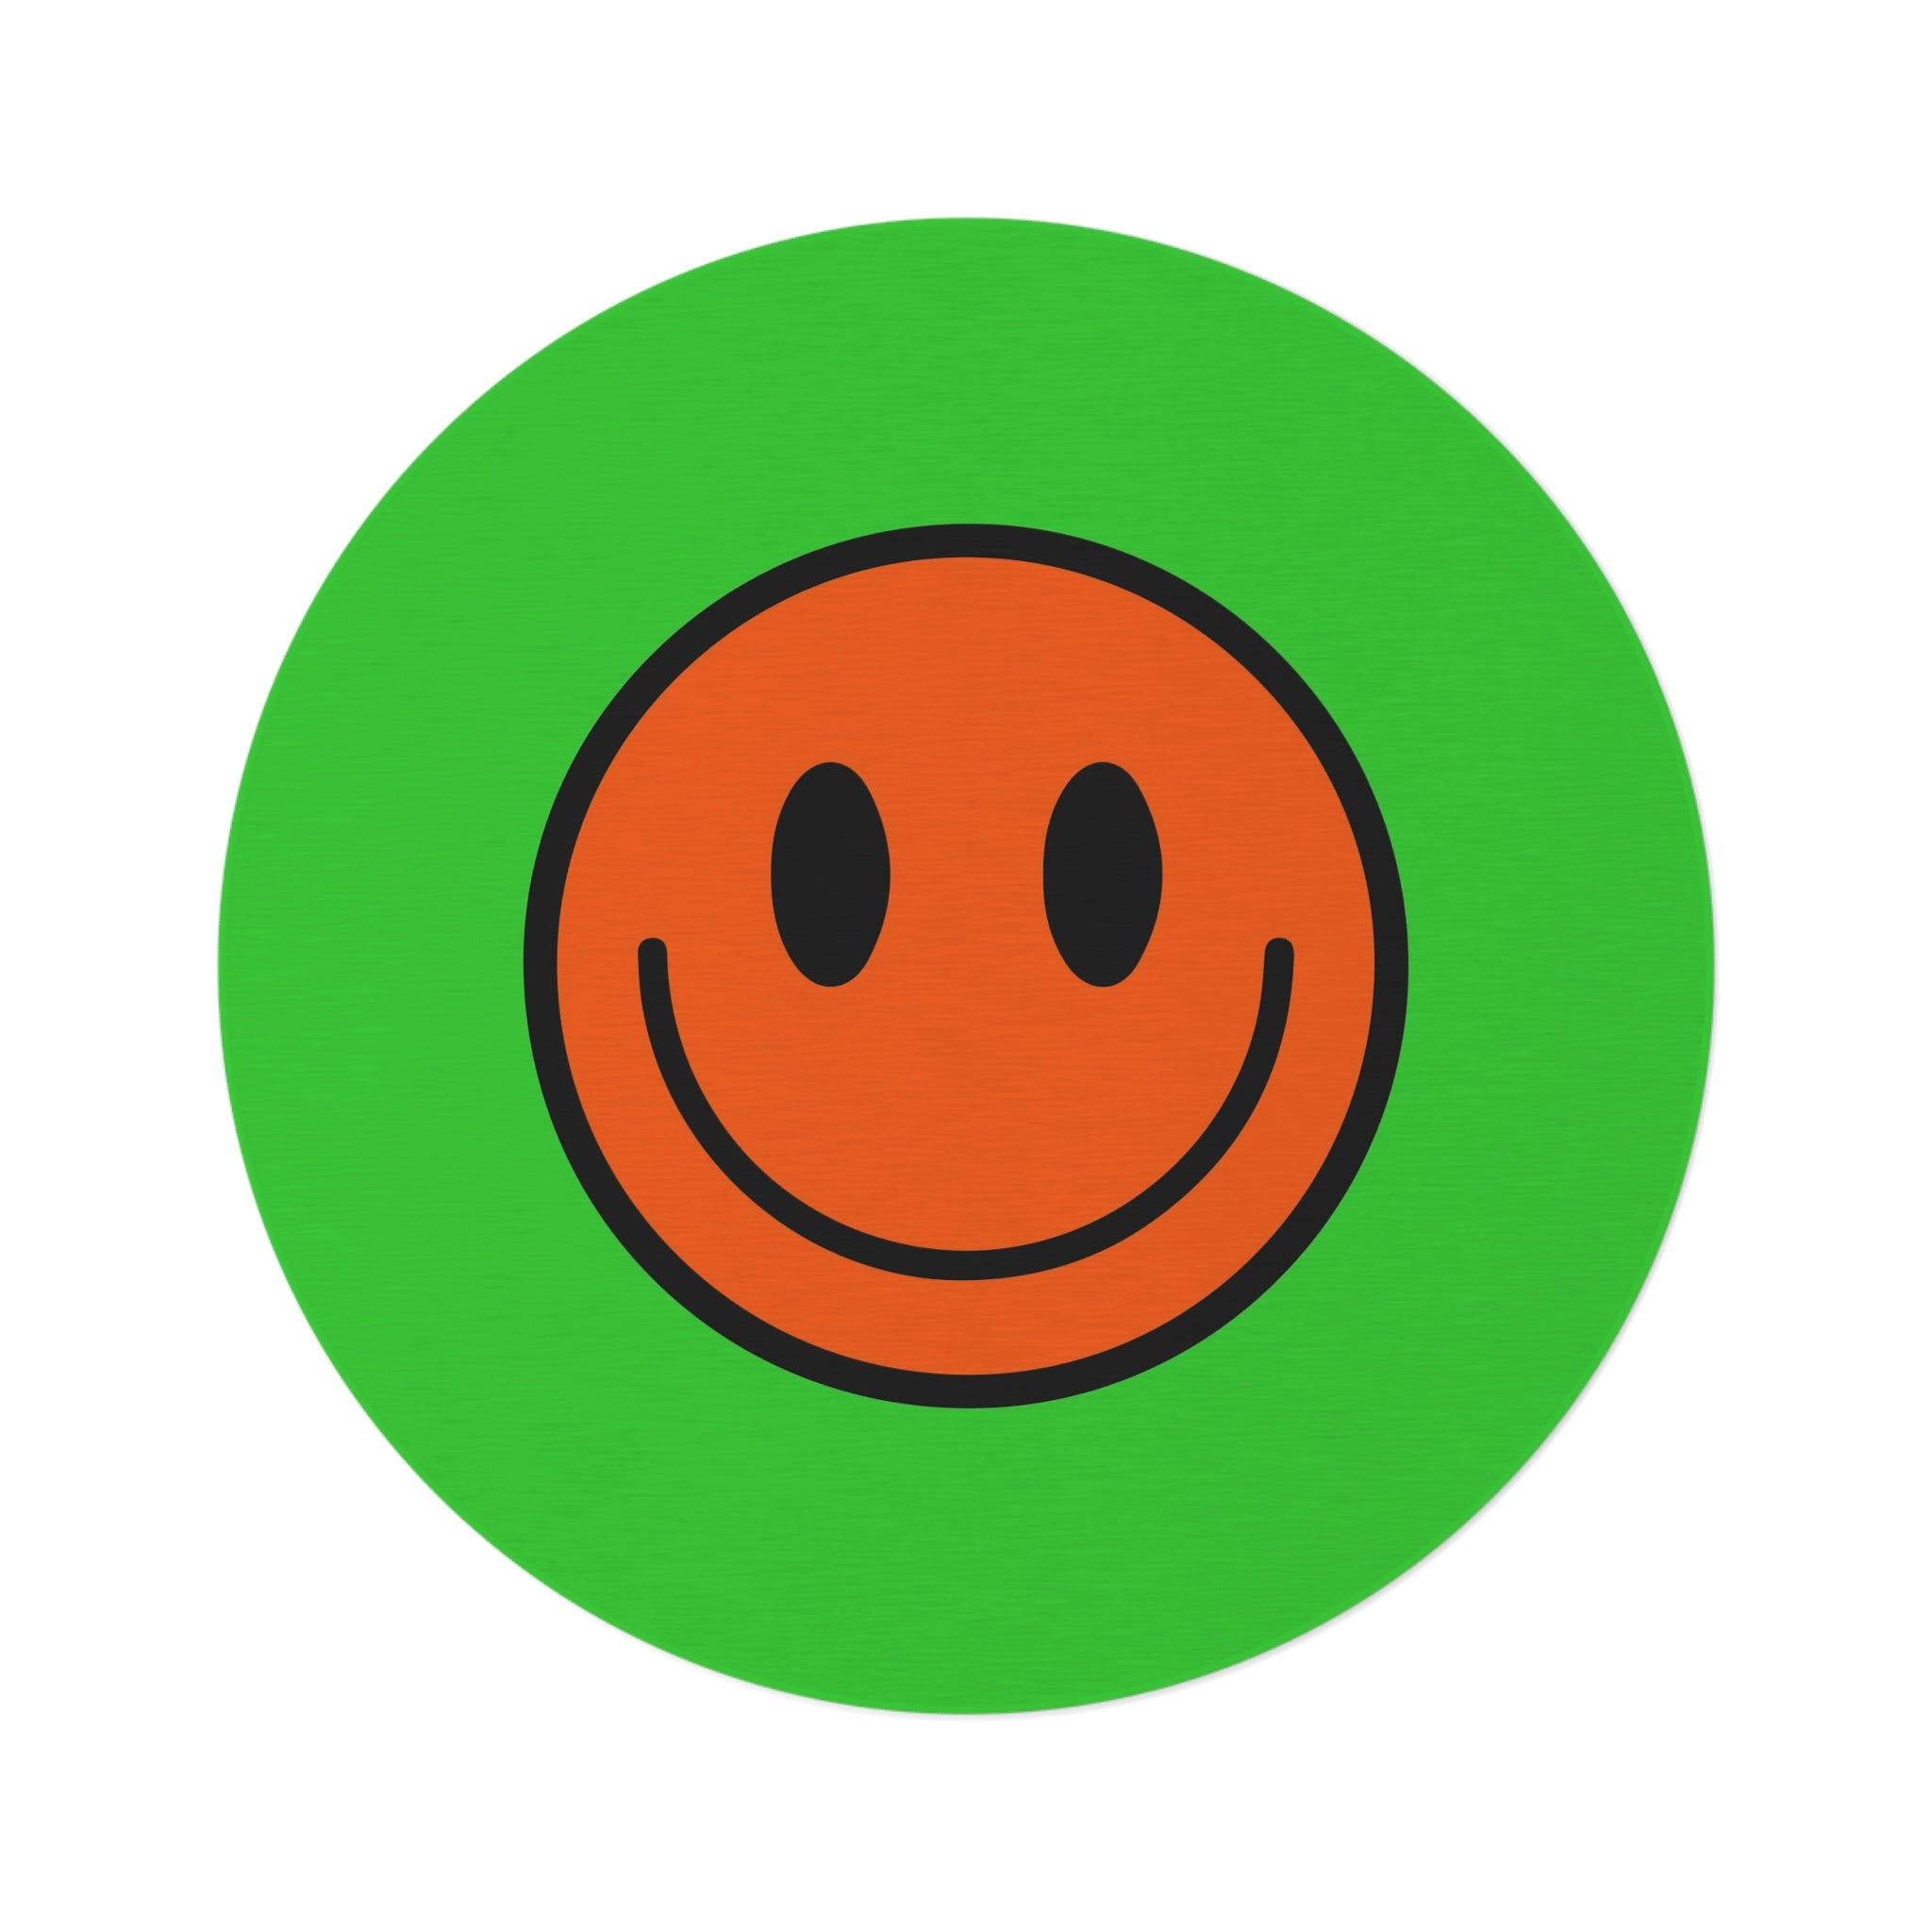 Round Rug Happy Face pattern orange/green